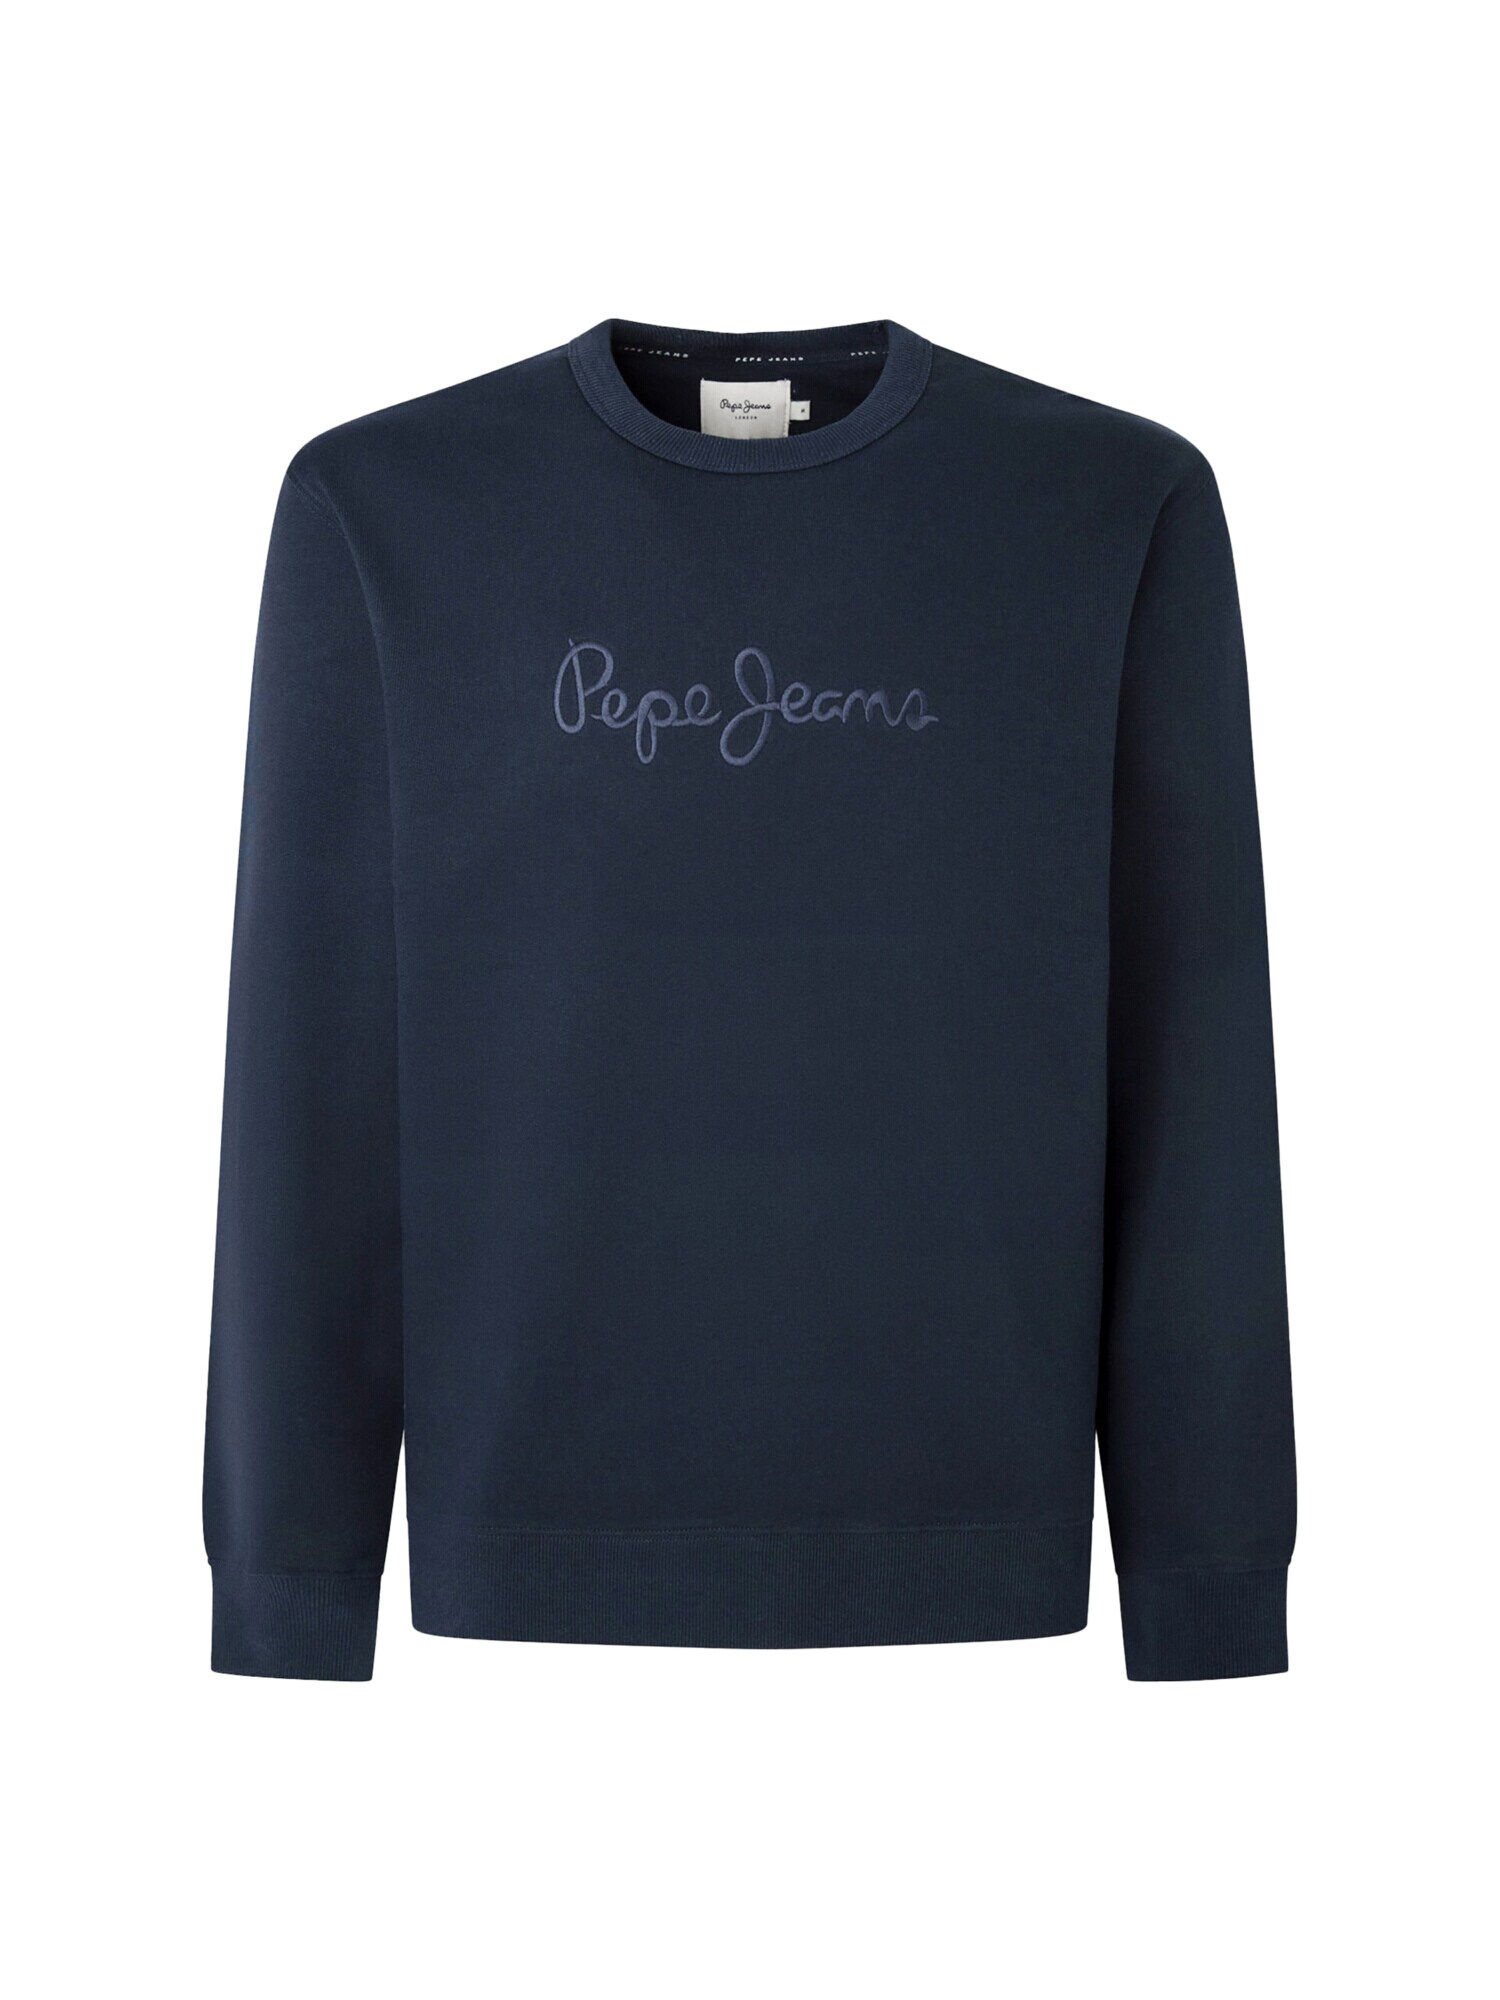 Pepe Jeans Sweatshirt 'Joe' navy / dunkelblau im Sale-Pepe Jeans 1